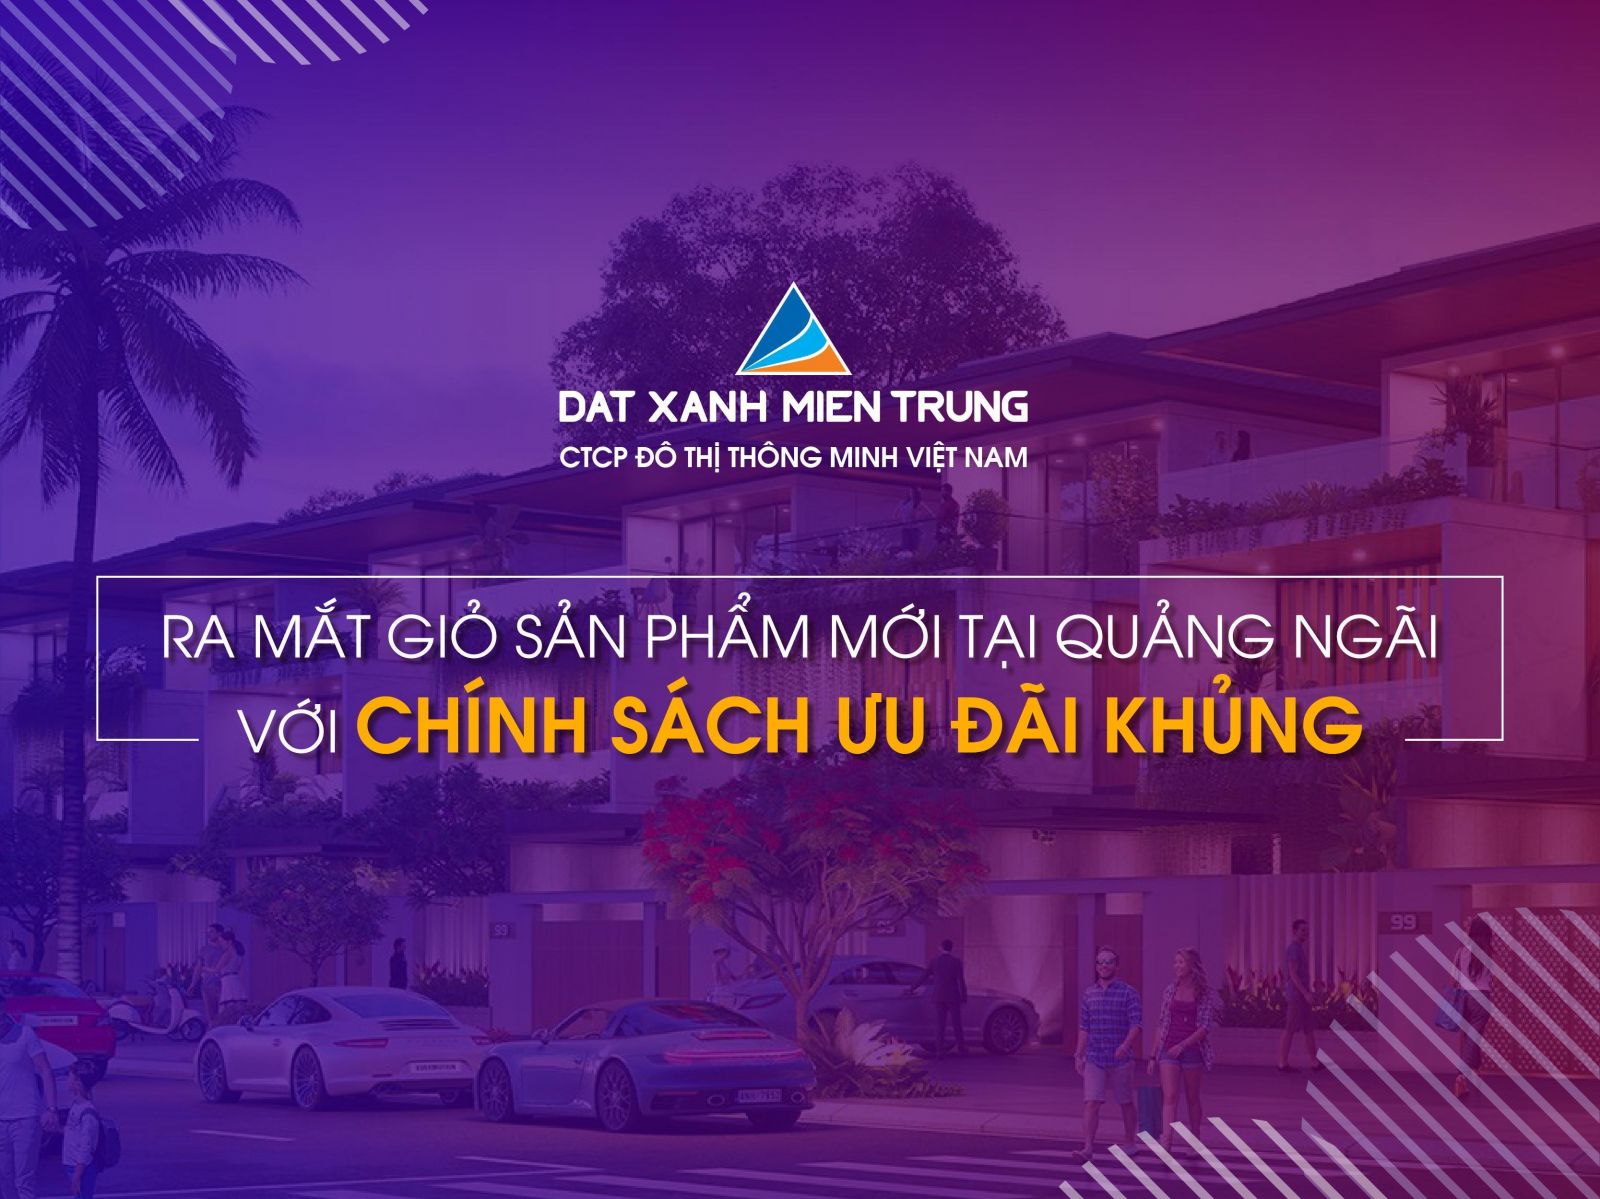 CÔNG BỐ KHUYẾN MÃI “KHỦNG” CHO KHÁCH HÀNG TRONG THÁNG 4 - Viet Nam Smart City